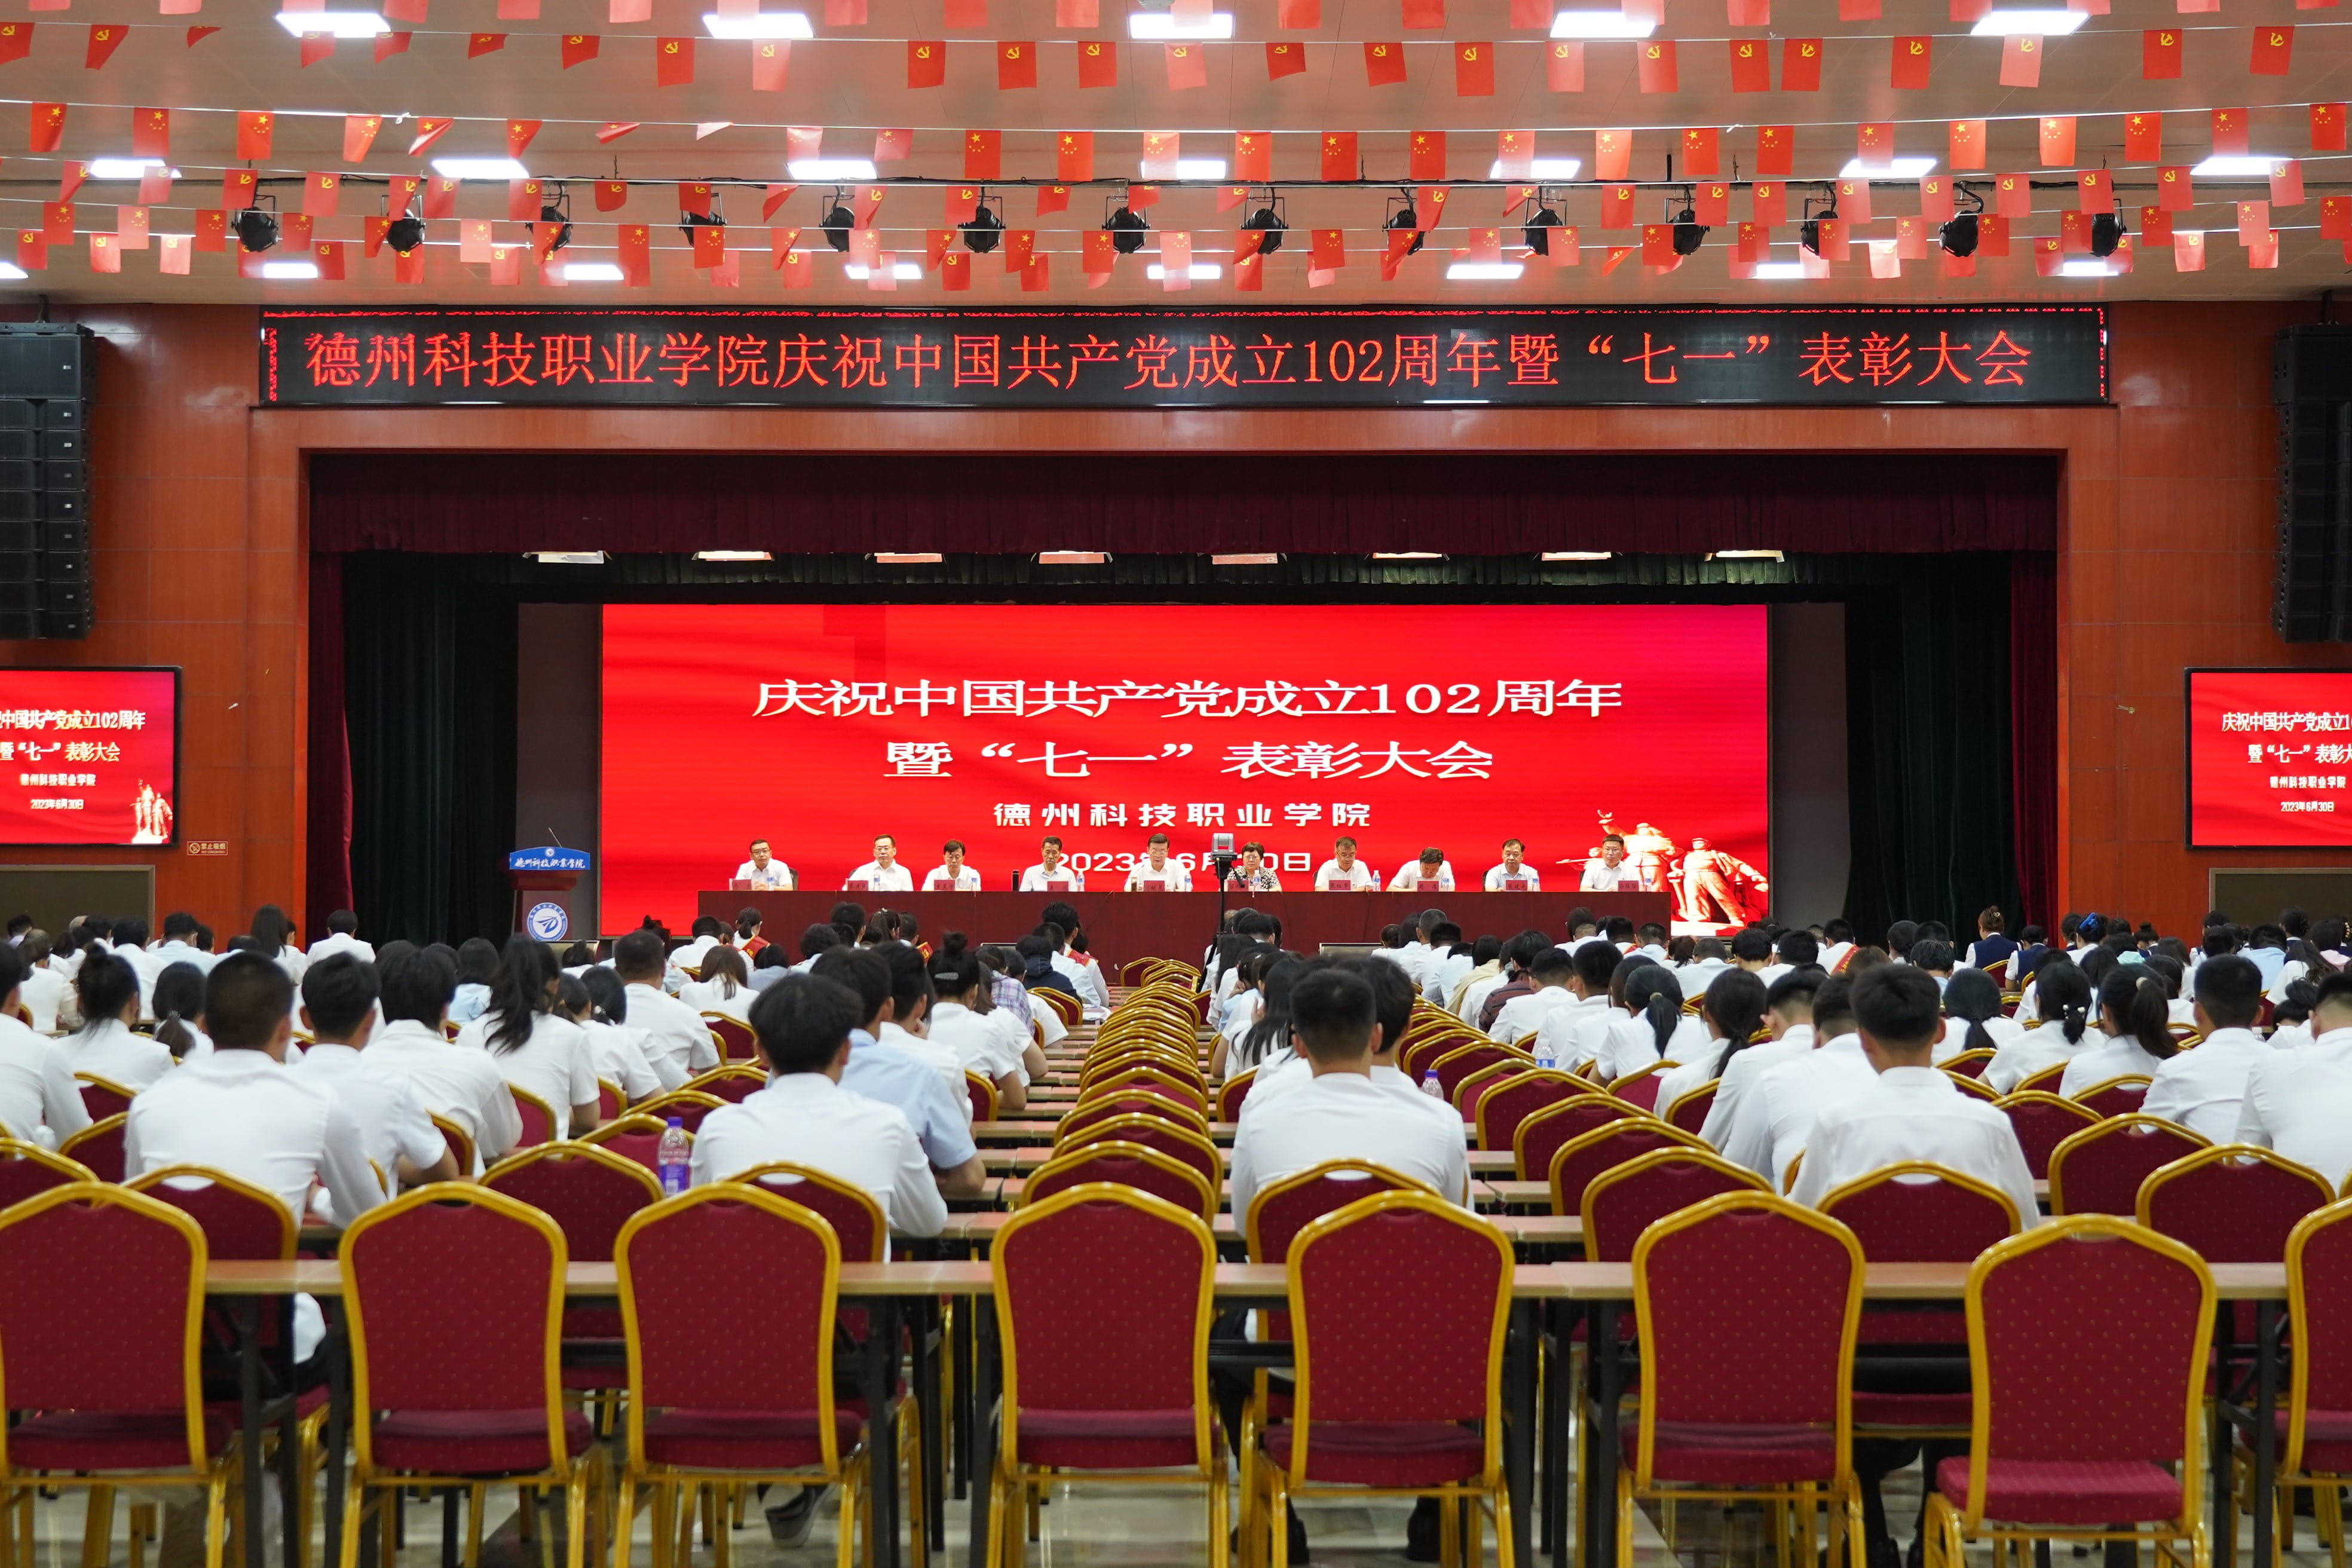 学院隆重举行庆祝中国共产党成立102周年暨“七一”表彰大会